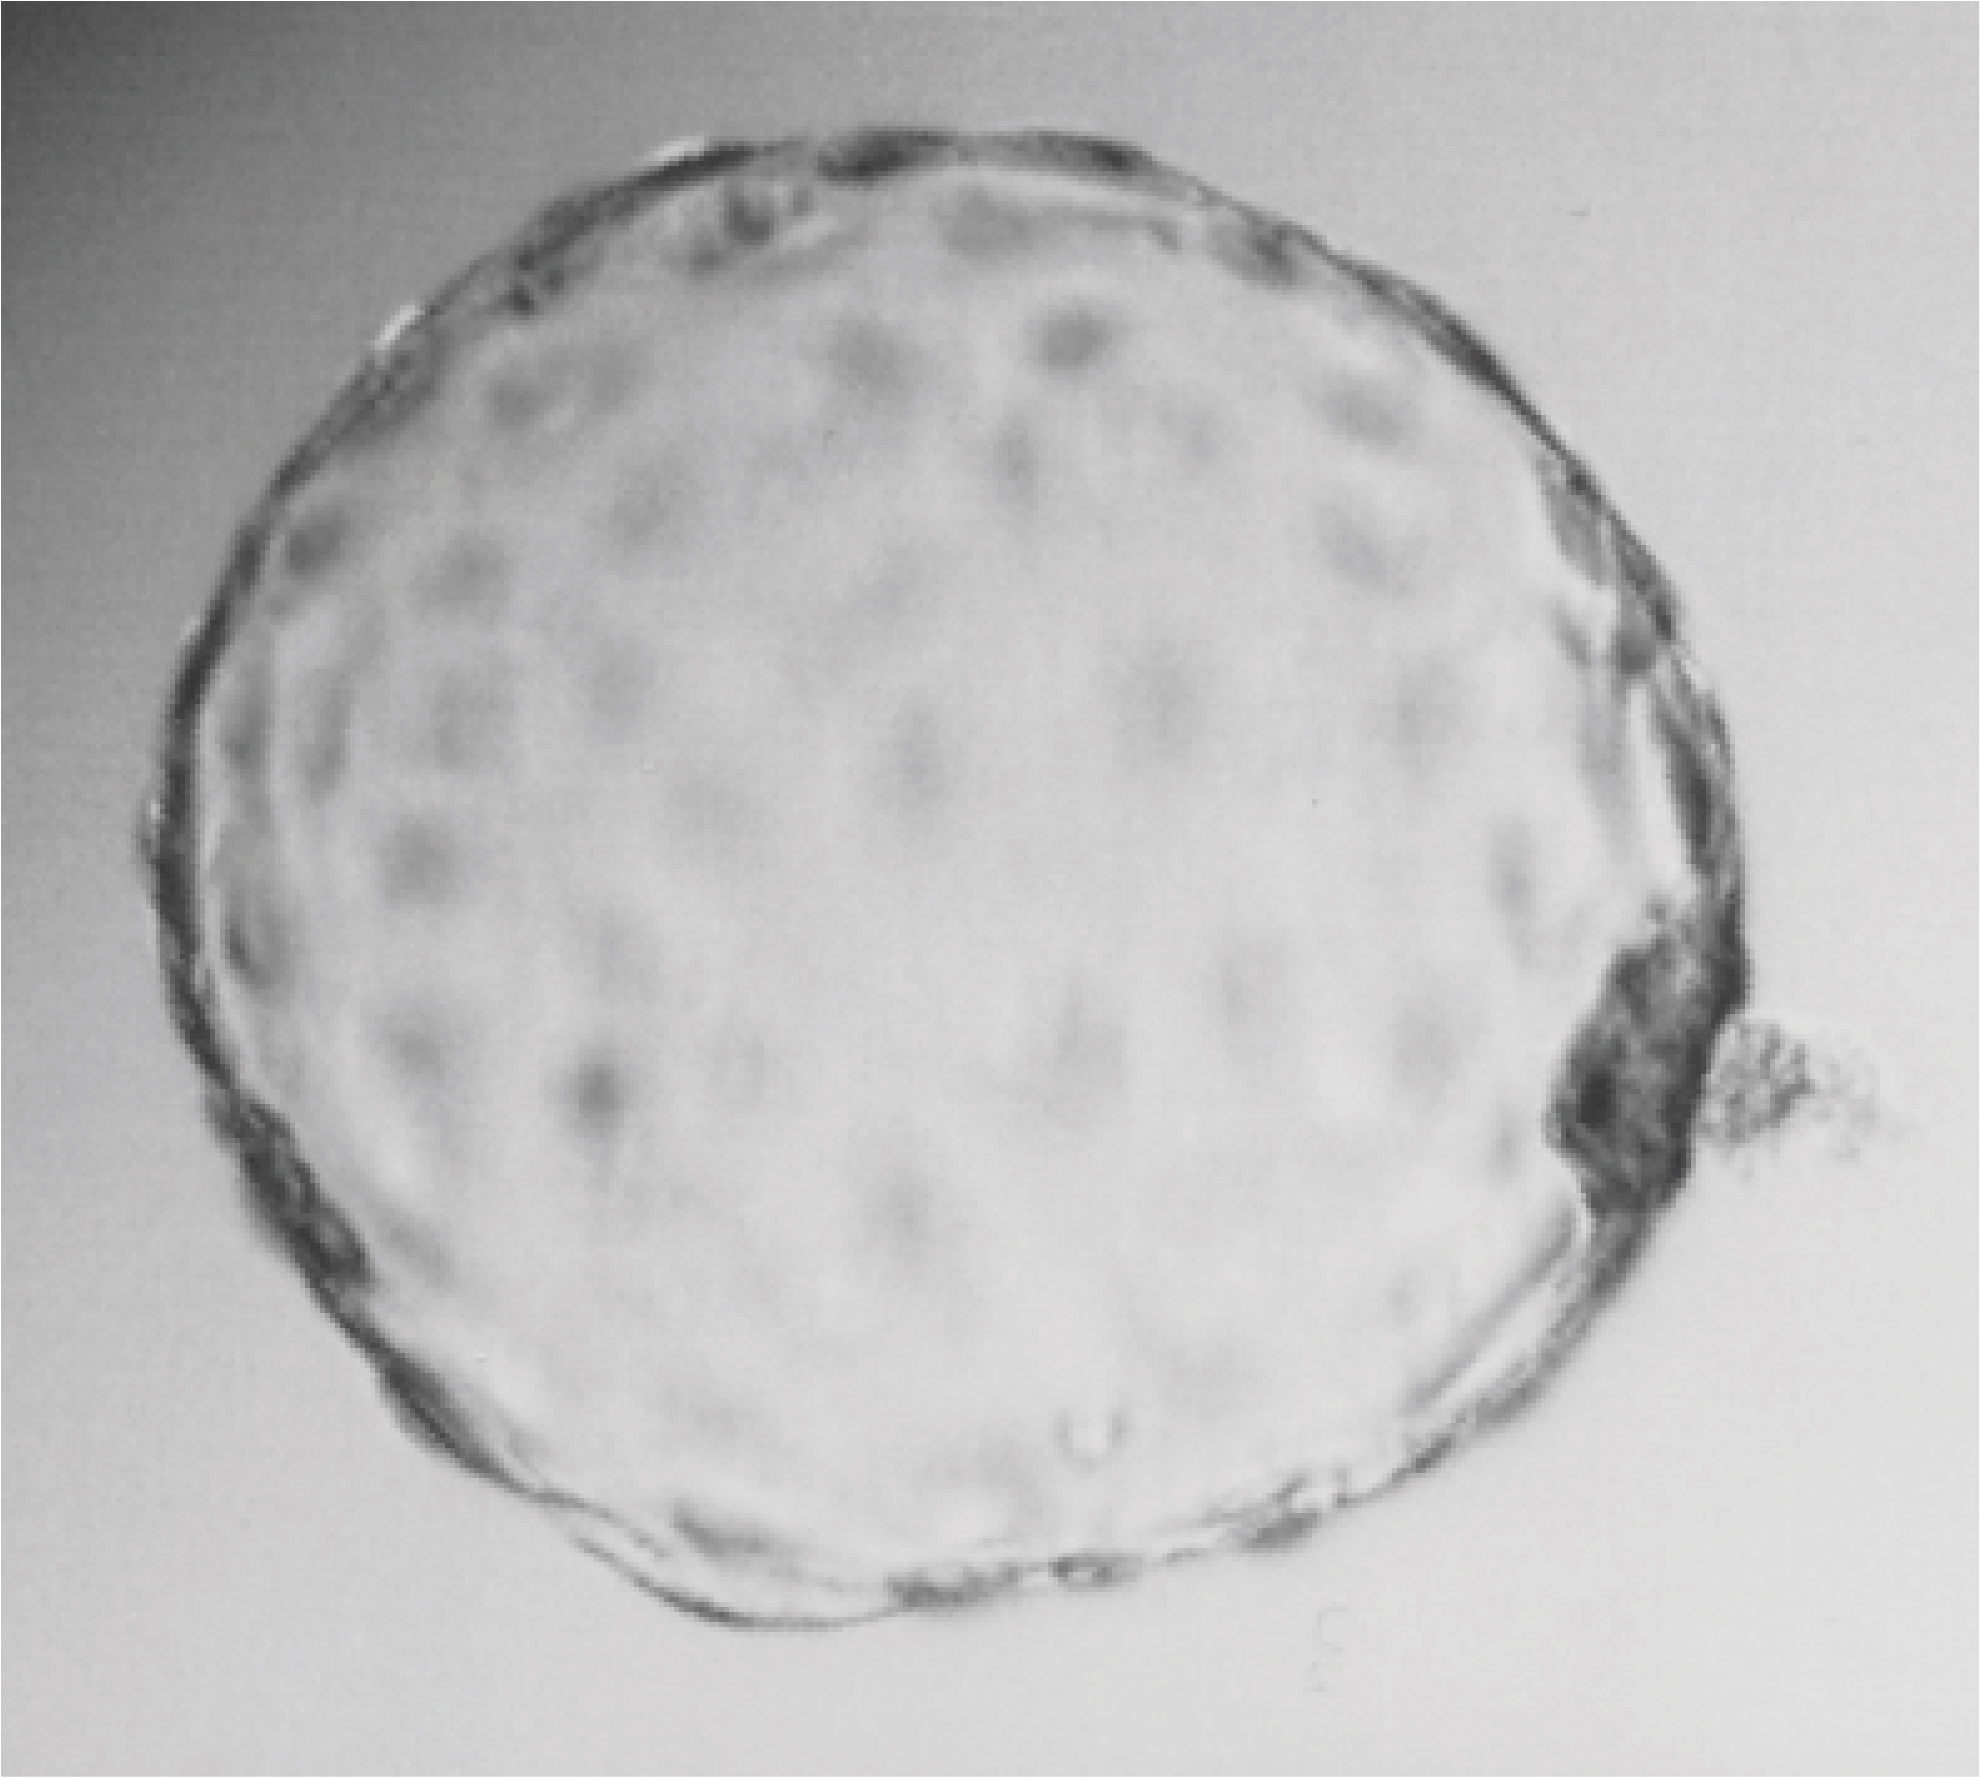 in-vitro-fertilization.jpg